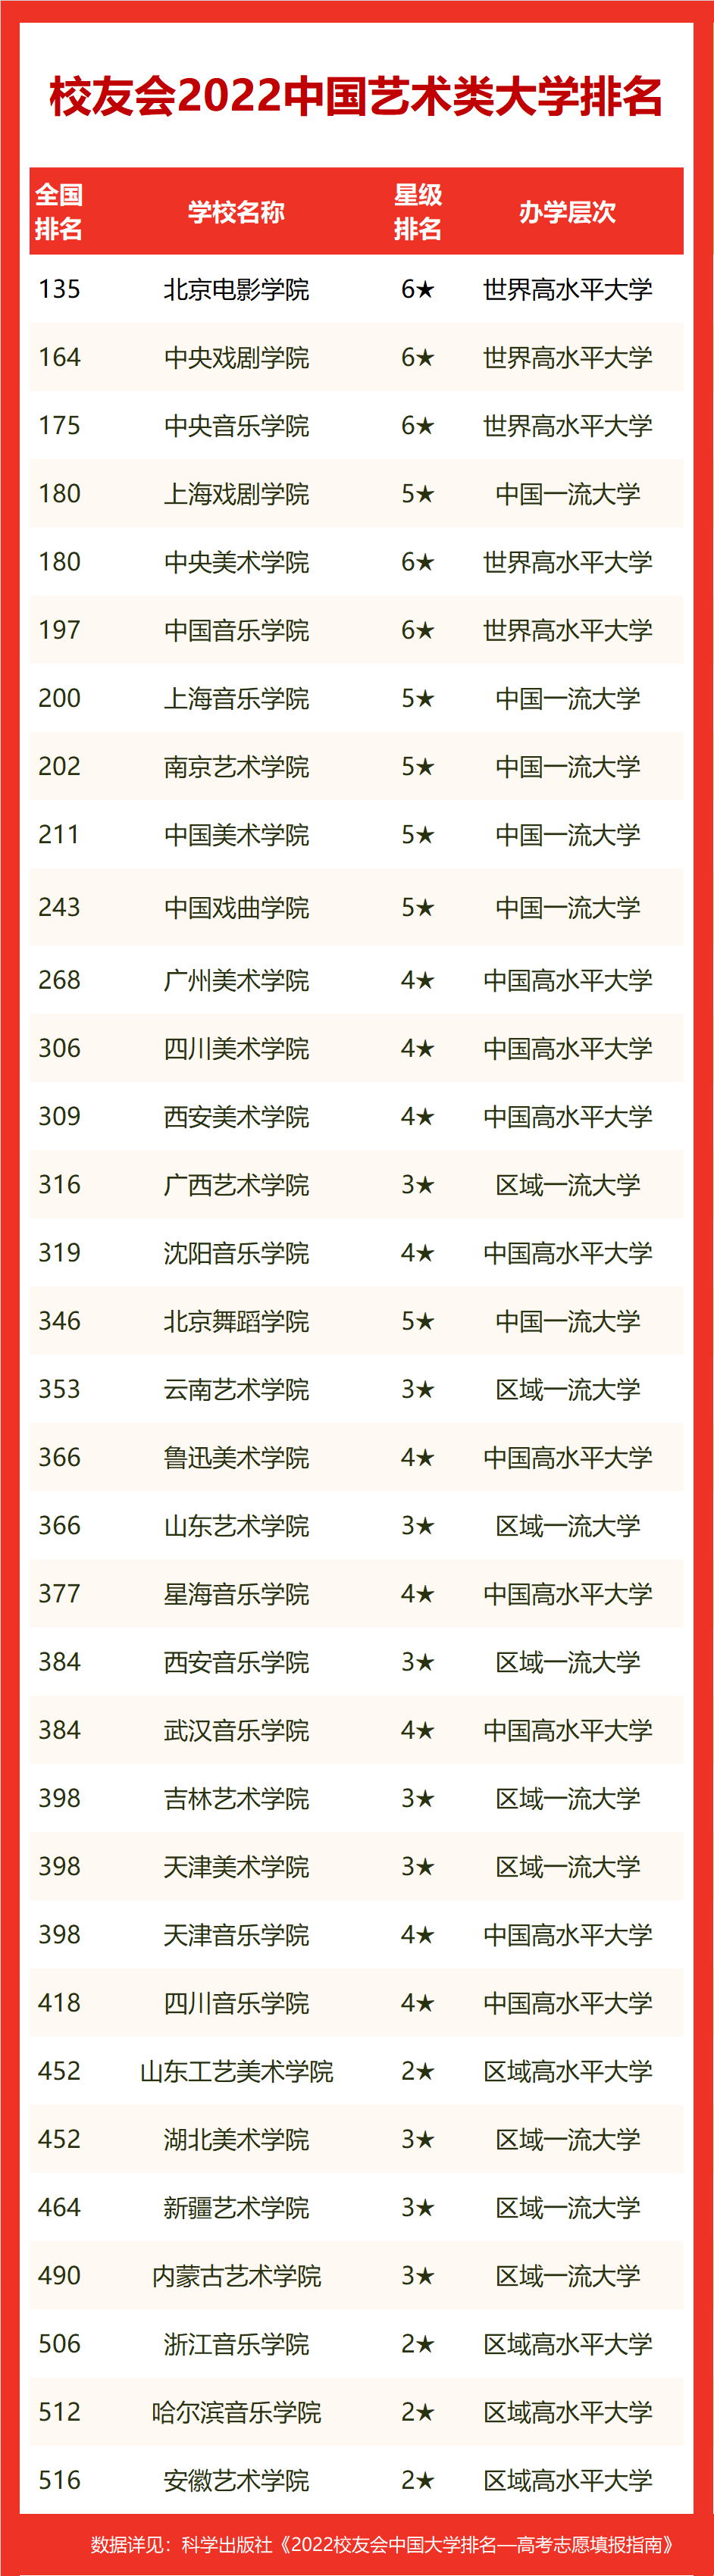 2022年艺术类大学排名 (http://www.hnyixiao.com/) 校内新闻 第1张